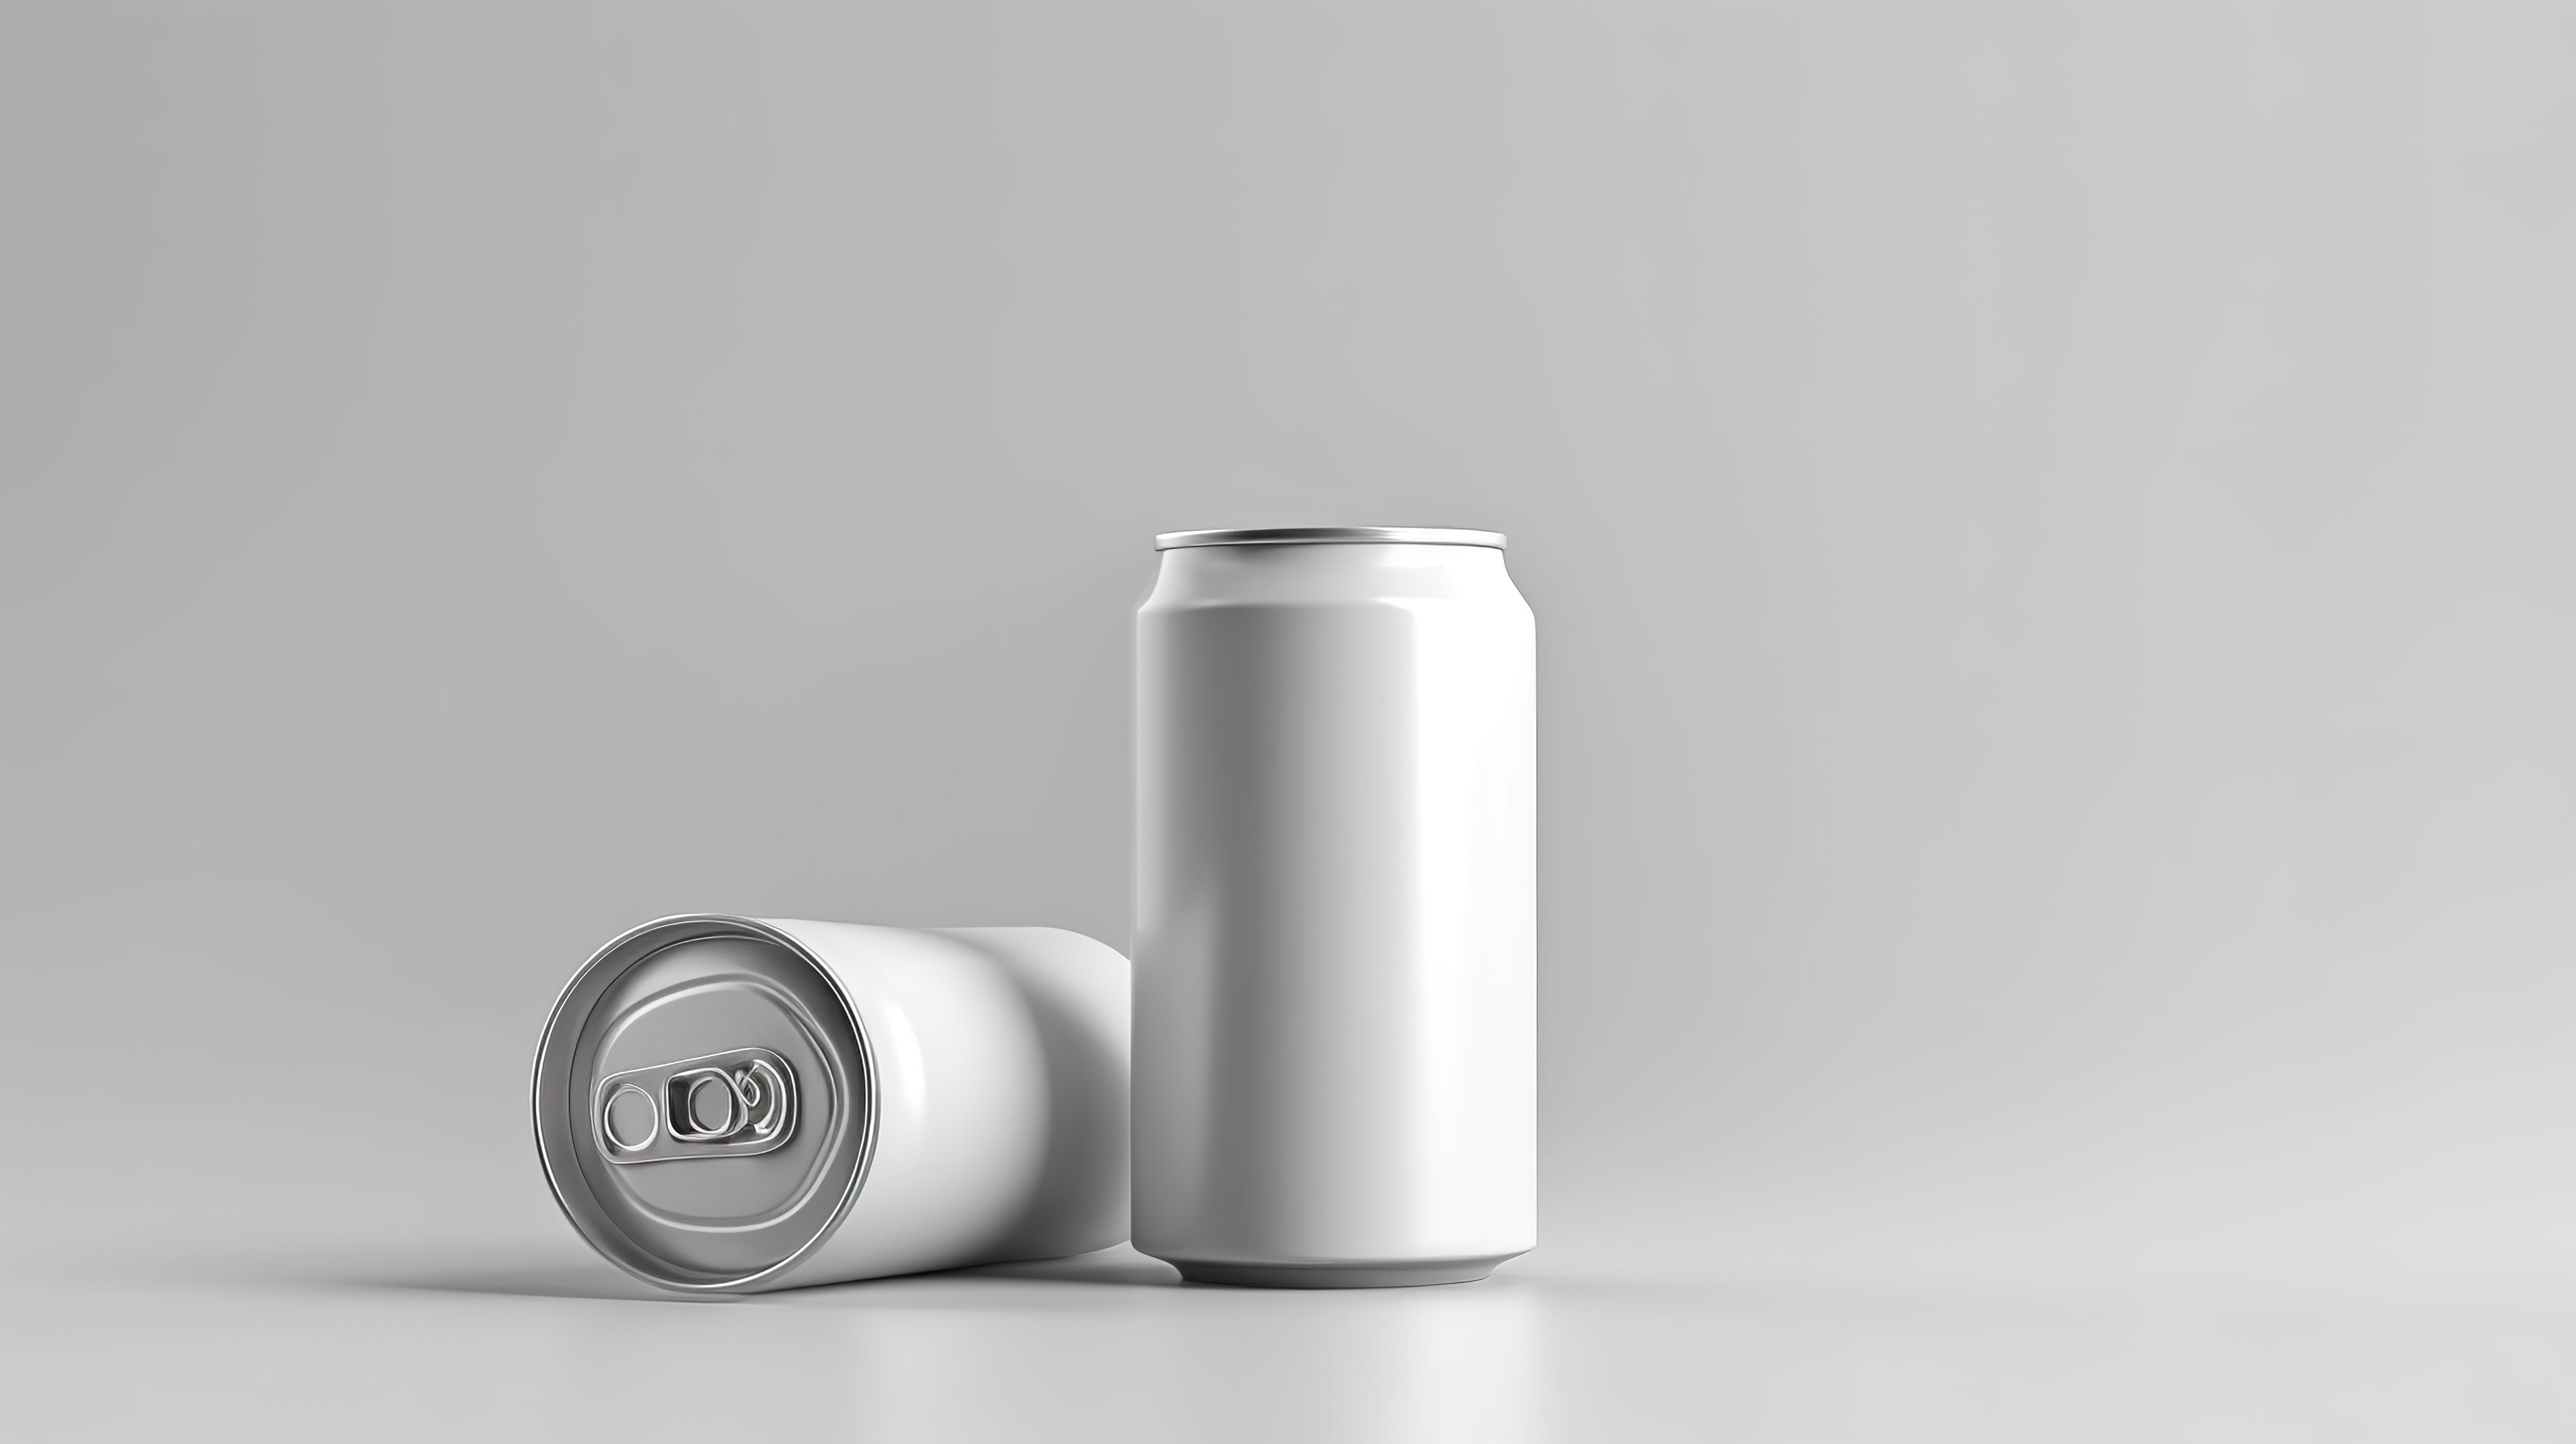 铝苏打水的逼真 3D 模型非常适合啤酒或能量饮料包装图片